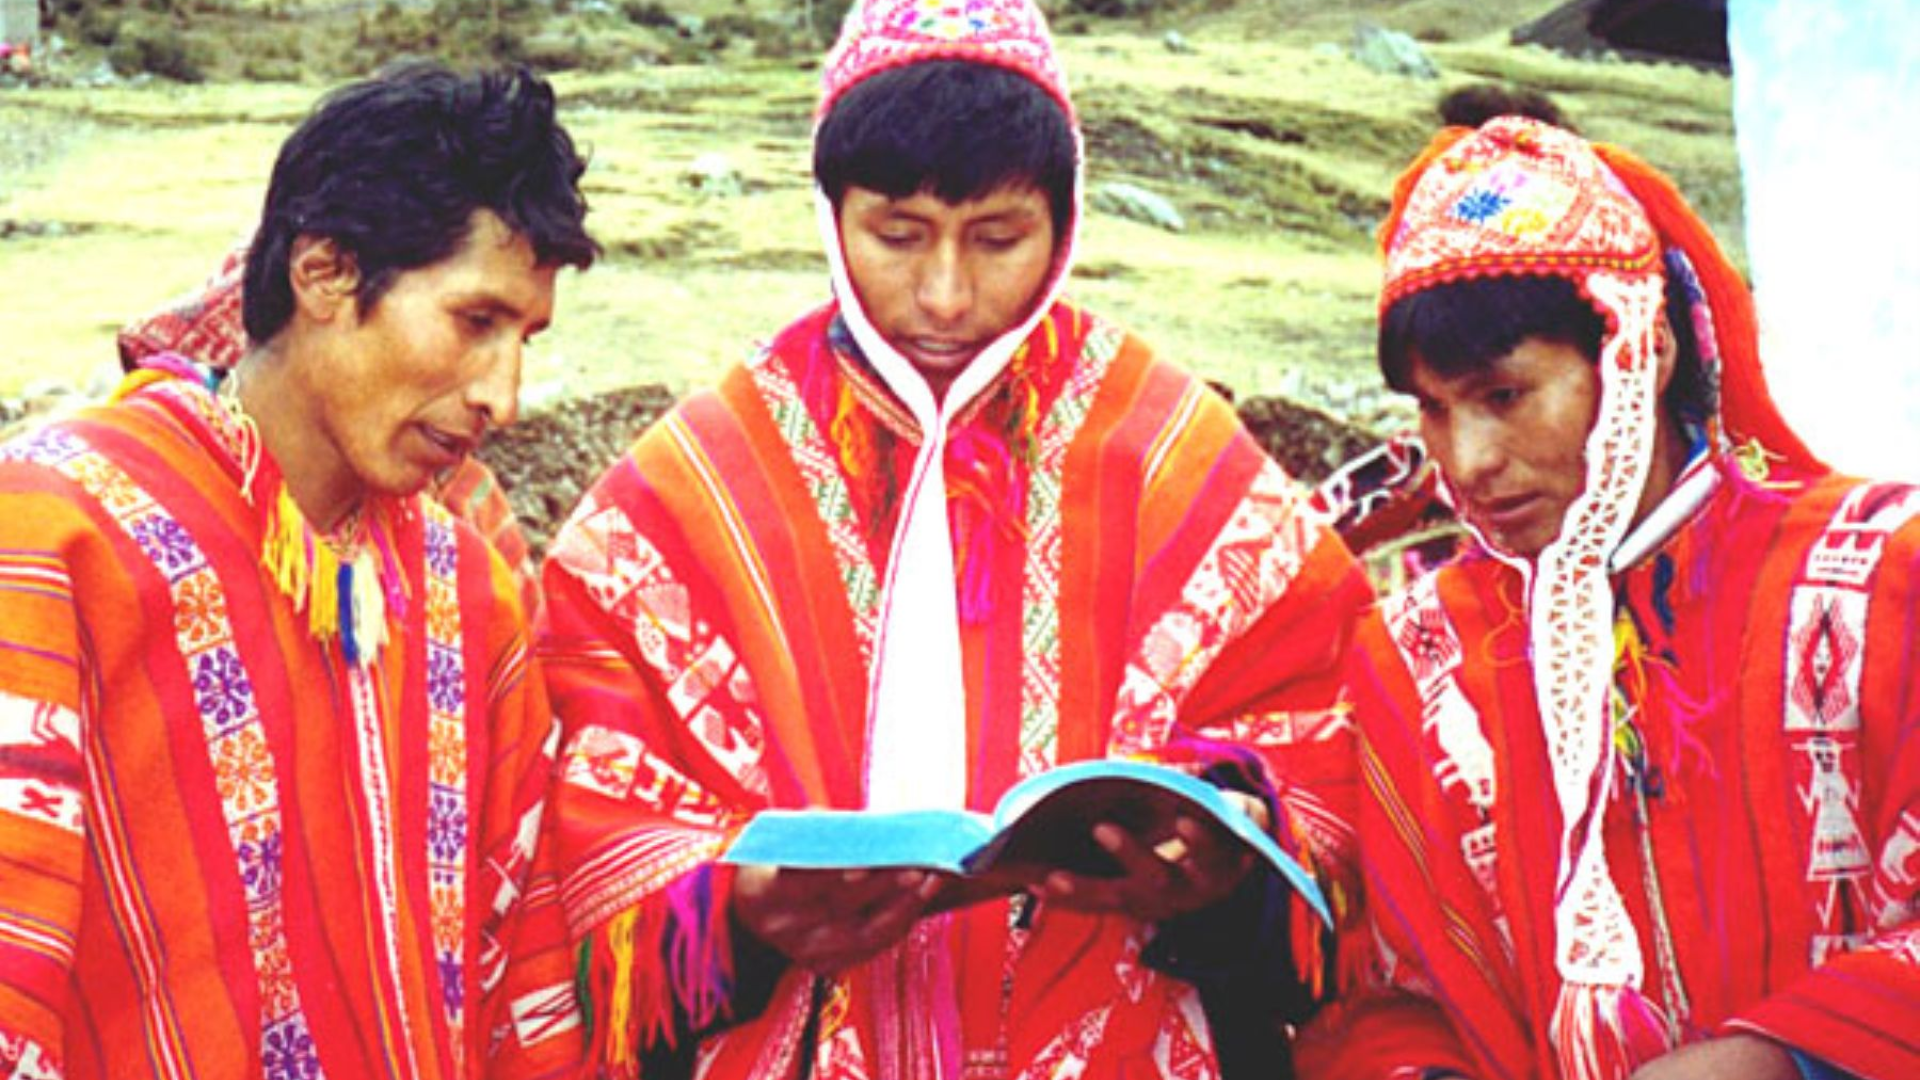 El expresidente Juan Velasco Alvarado, por Decreto Ley N.° 21156, reconoció el quechua como lengua oficial de la República y fomentó su enseñanza obligatoria. Foto: Andina